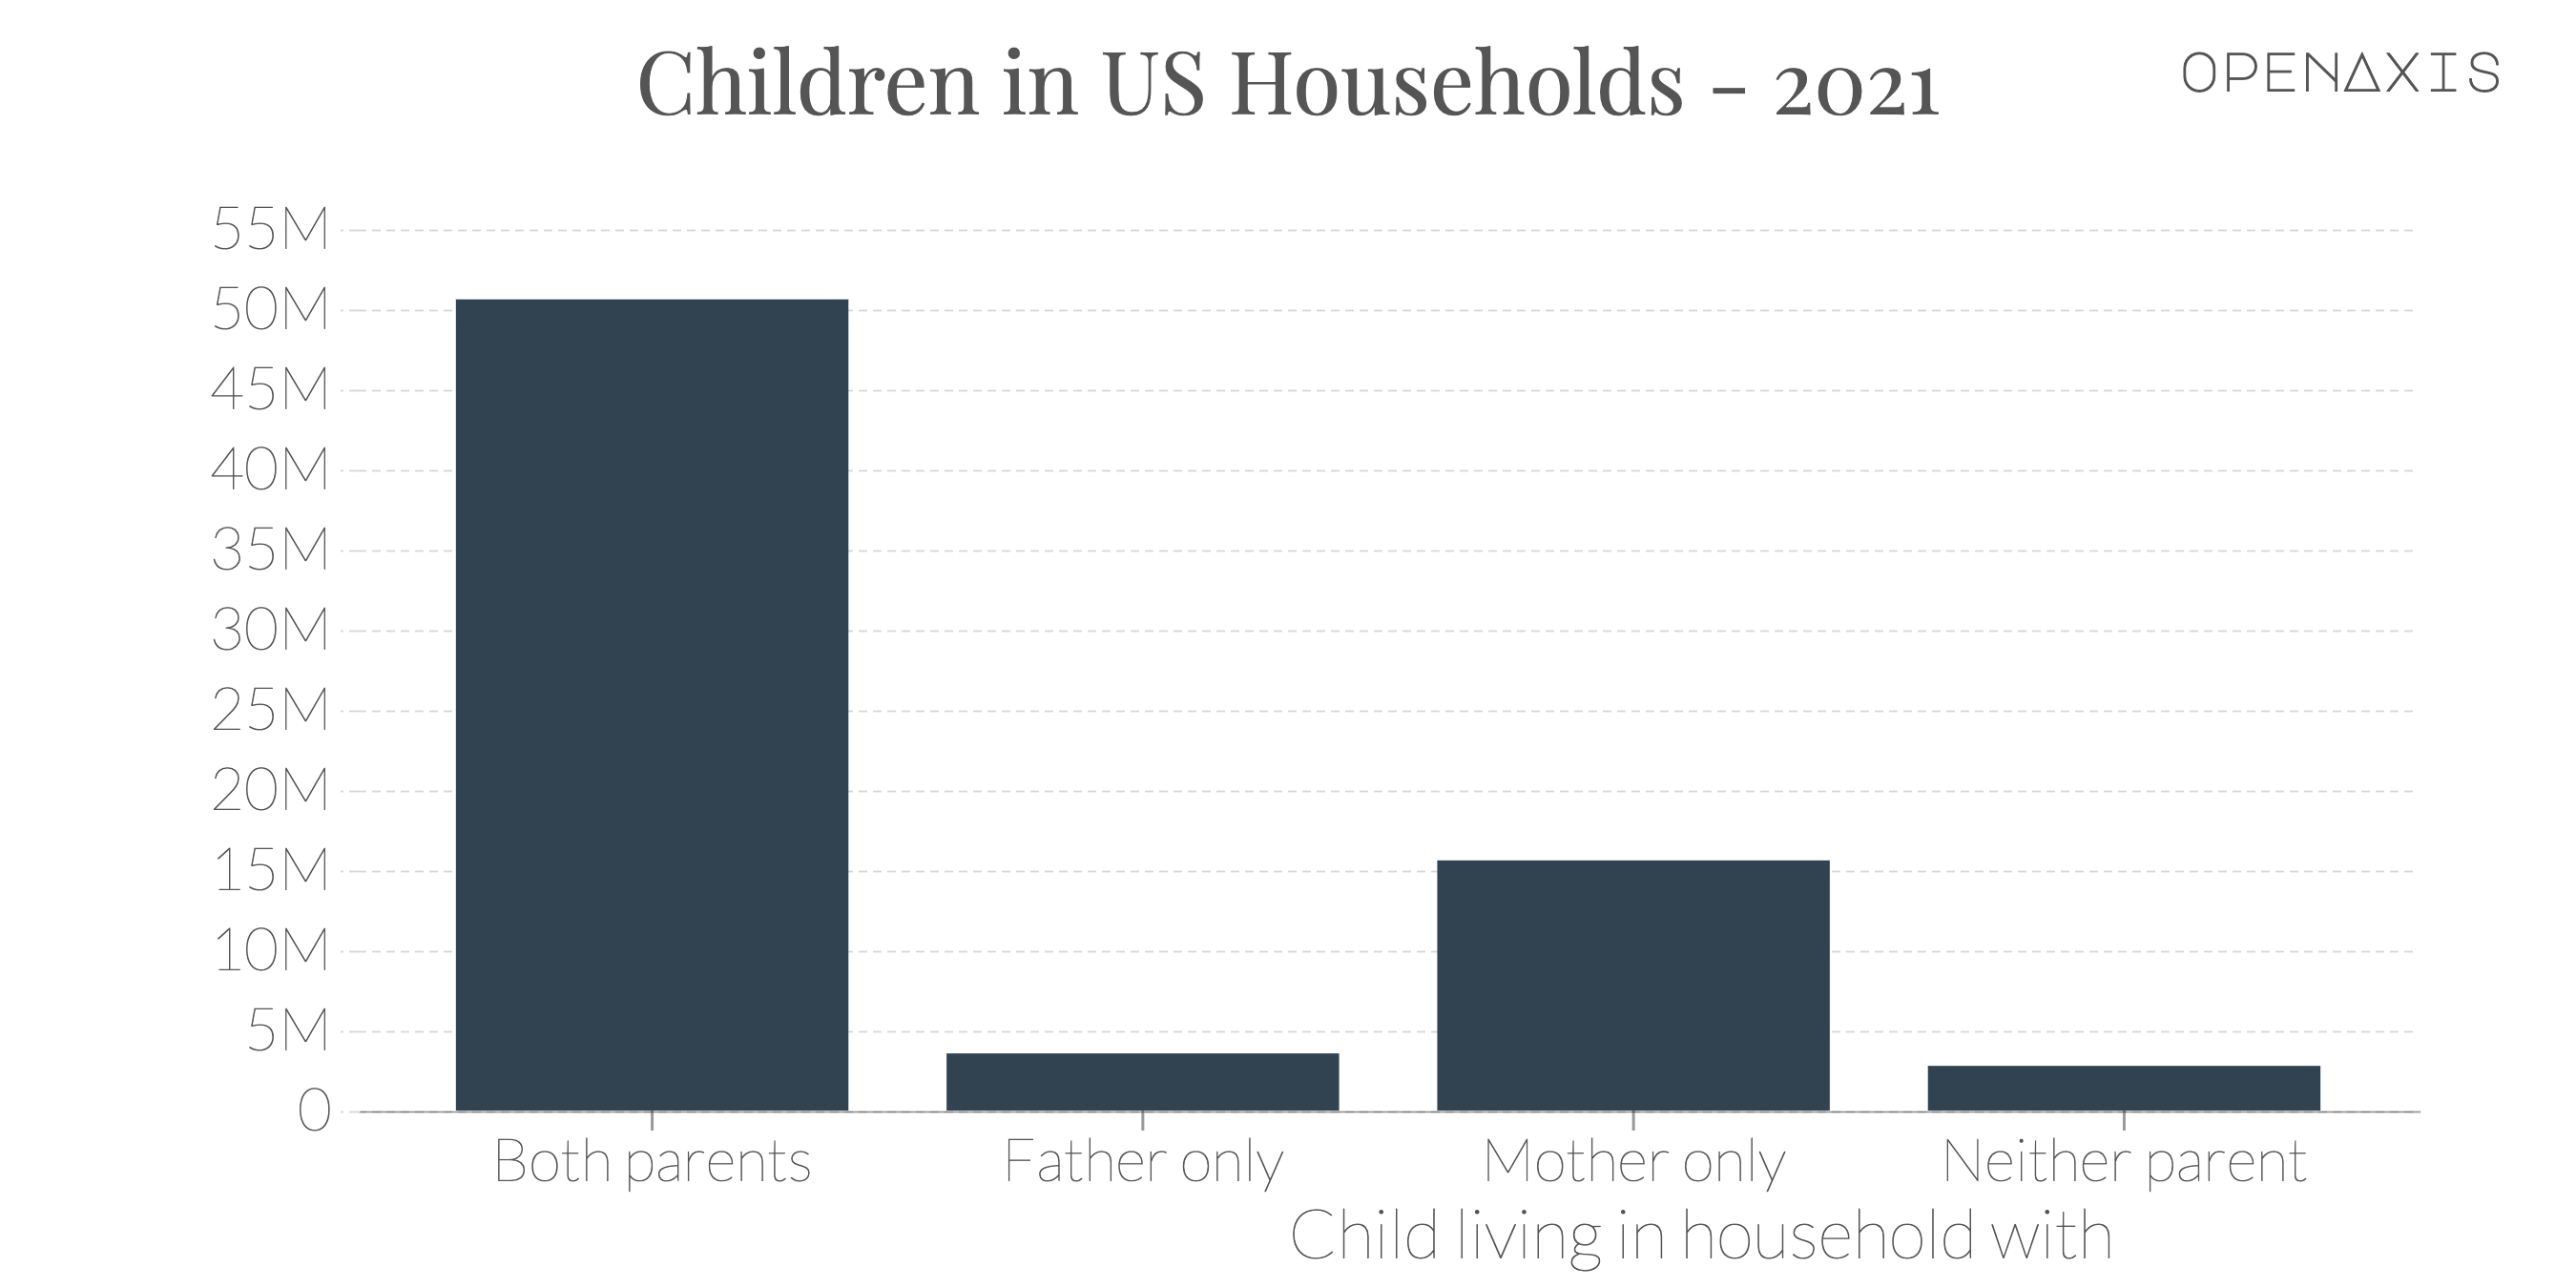 "Children in US Households - 2021"